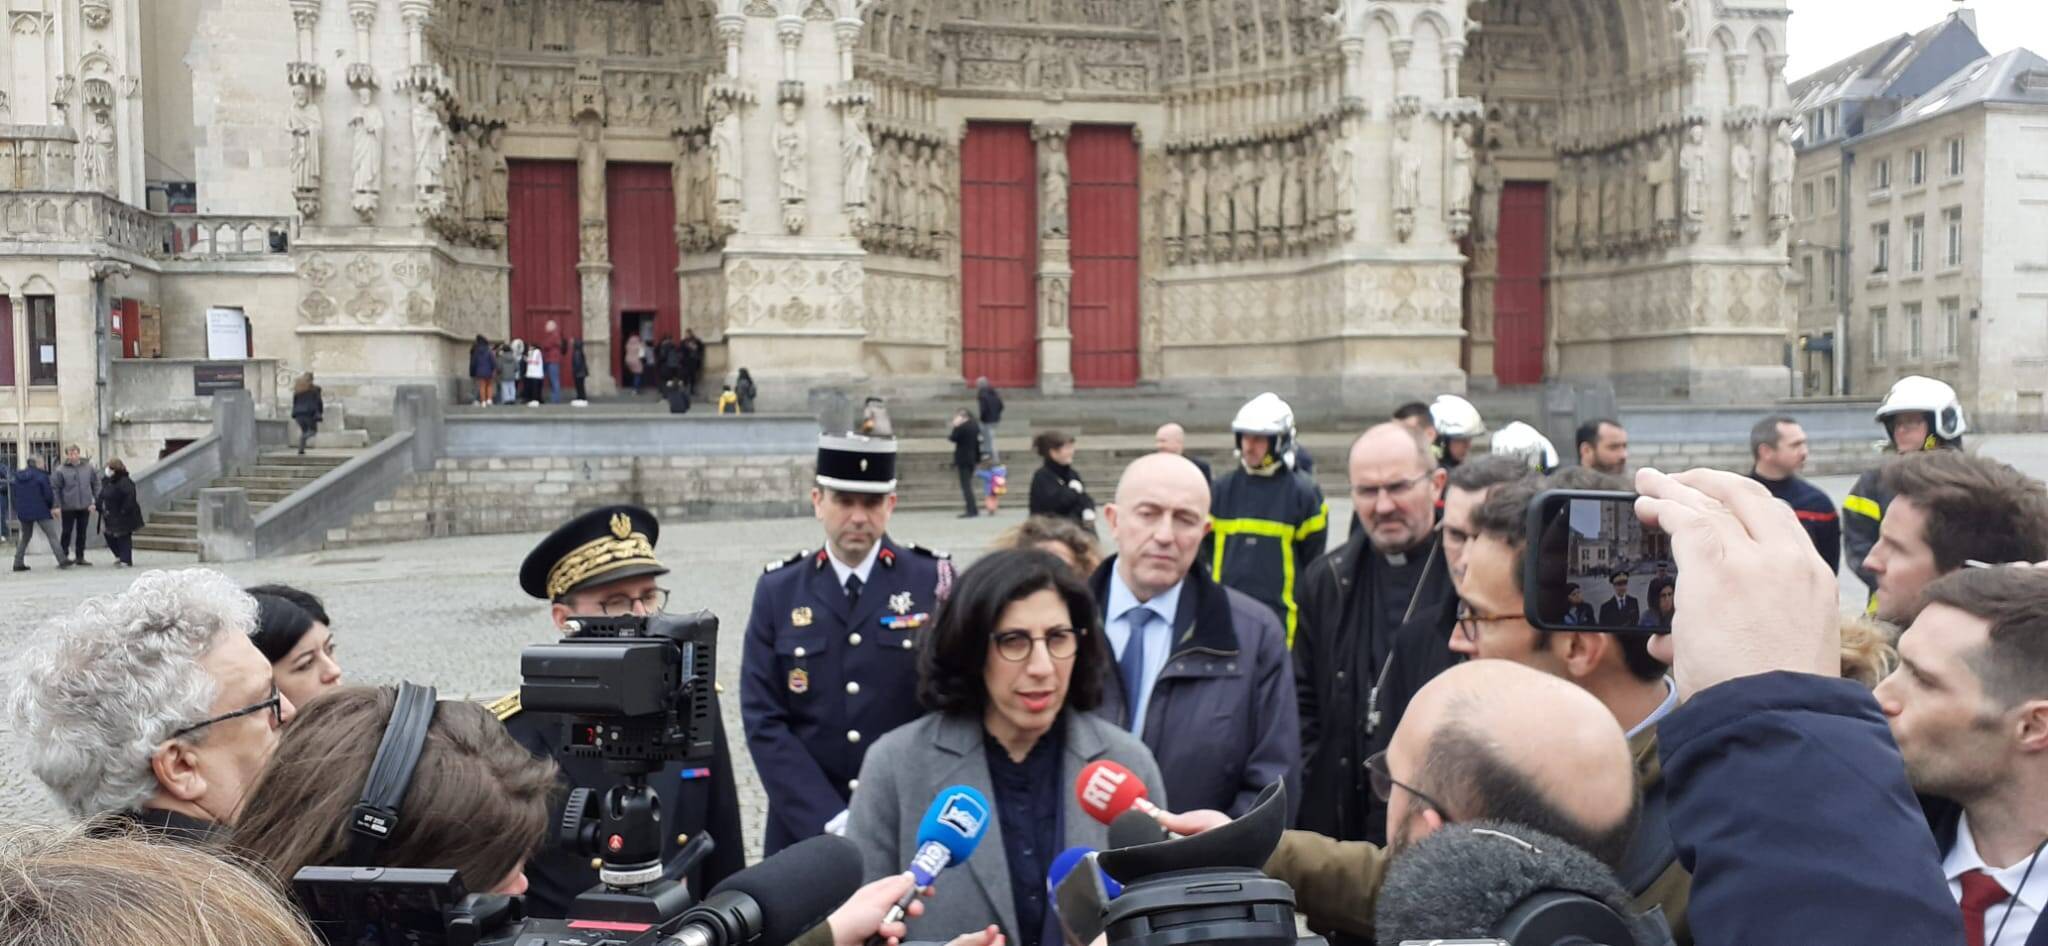 Plan "Sécurité Cathédrales" : Rima Abdul Malak visite Notre-Dame d'Amiens et annonce l'amplification du plan